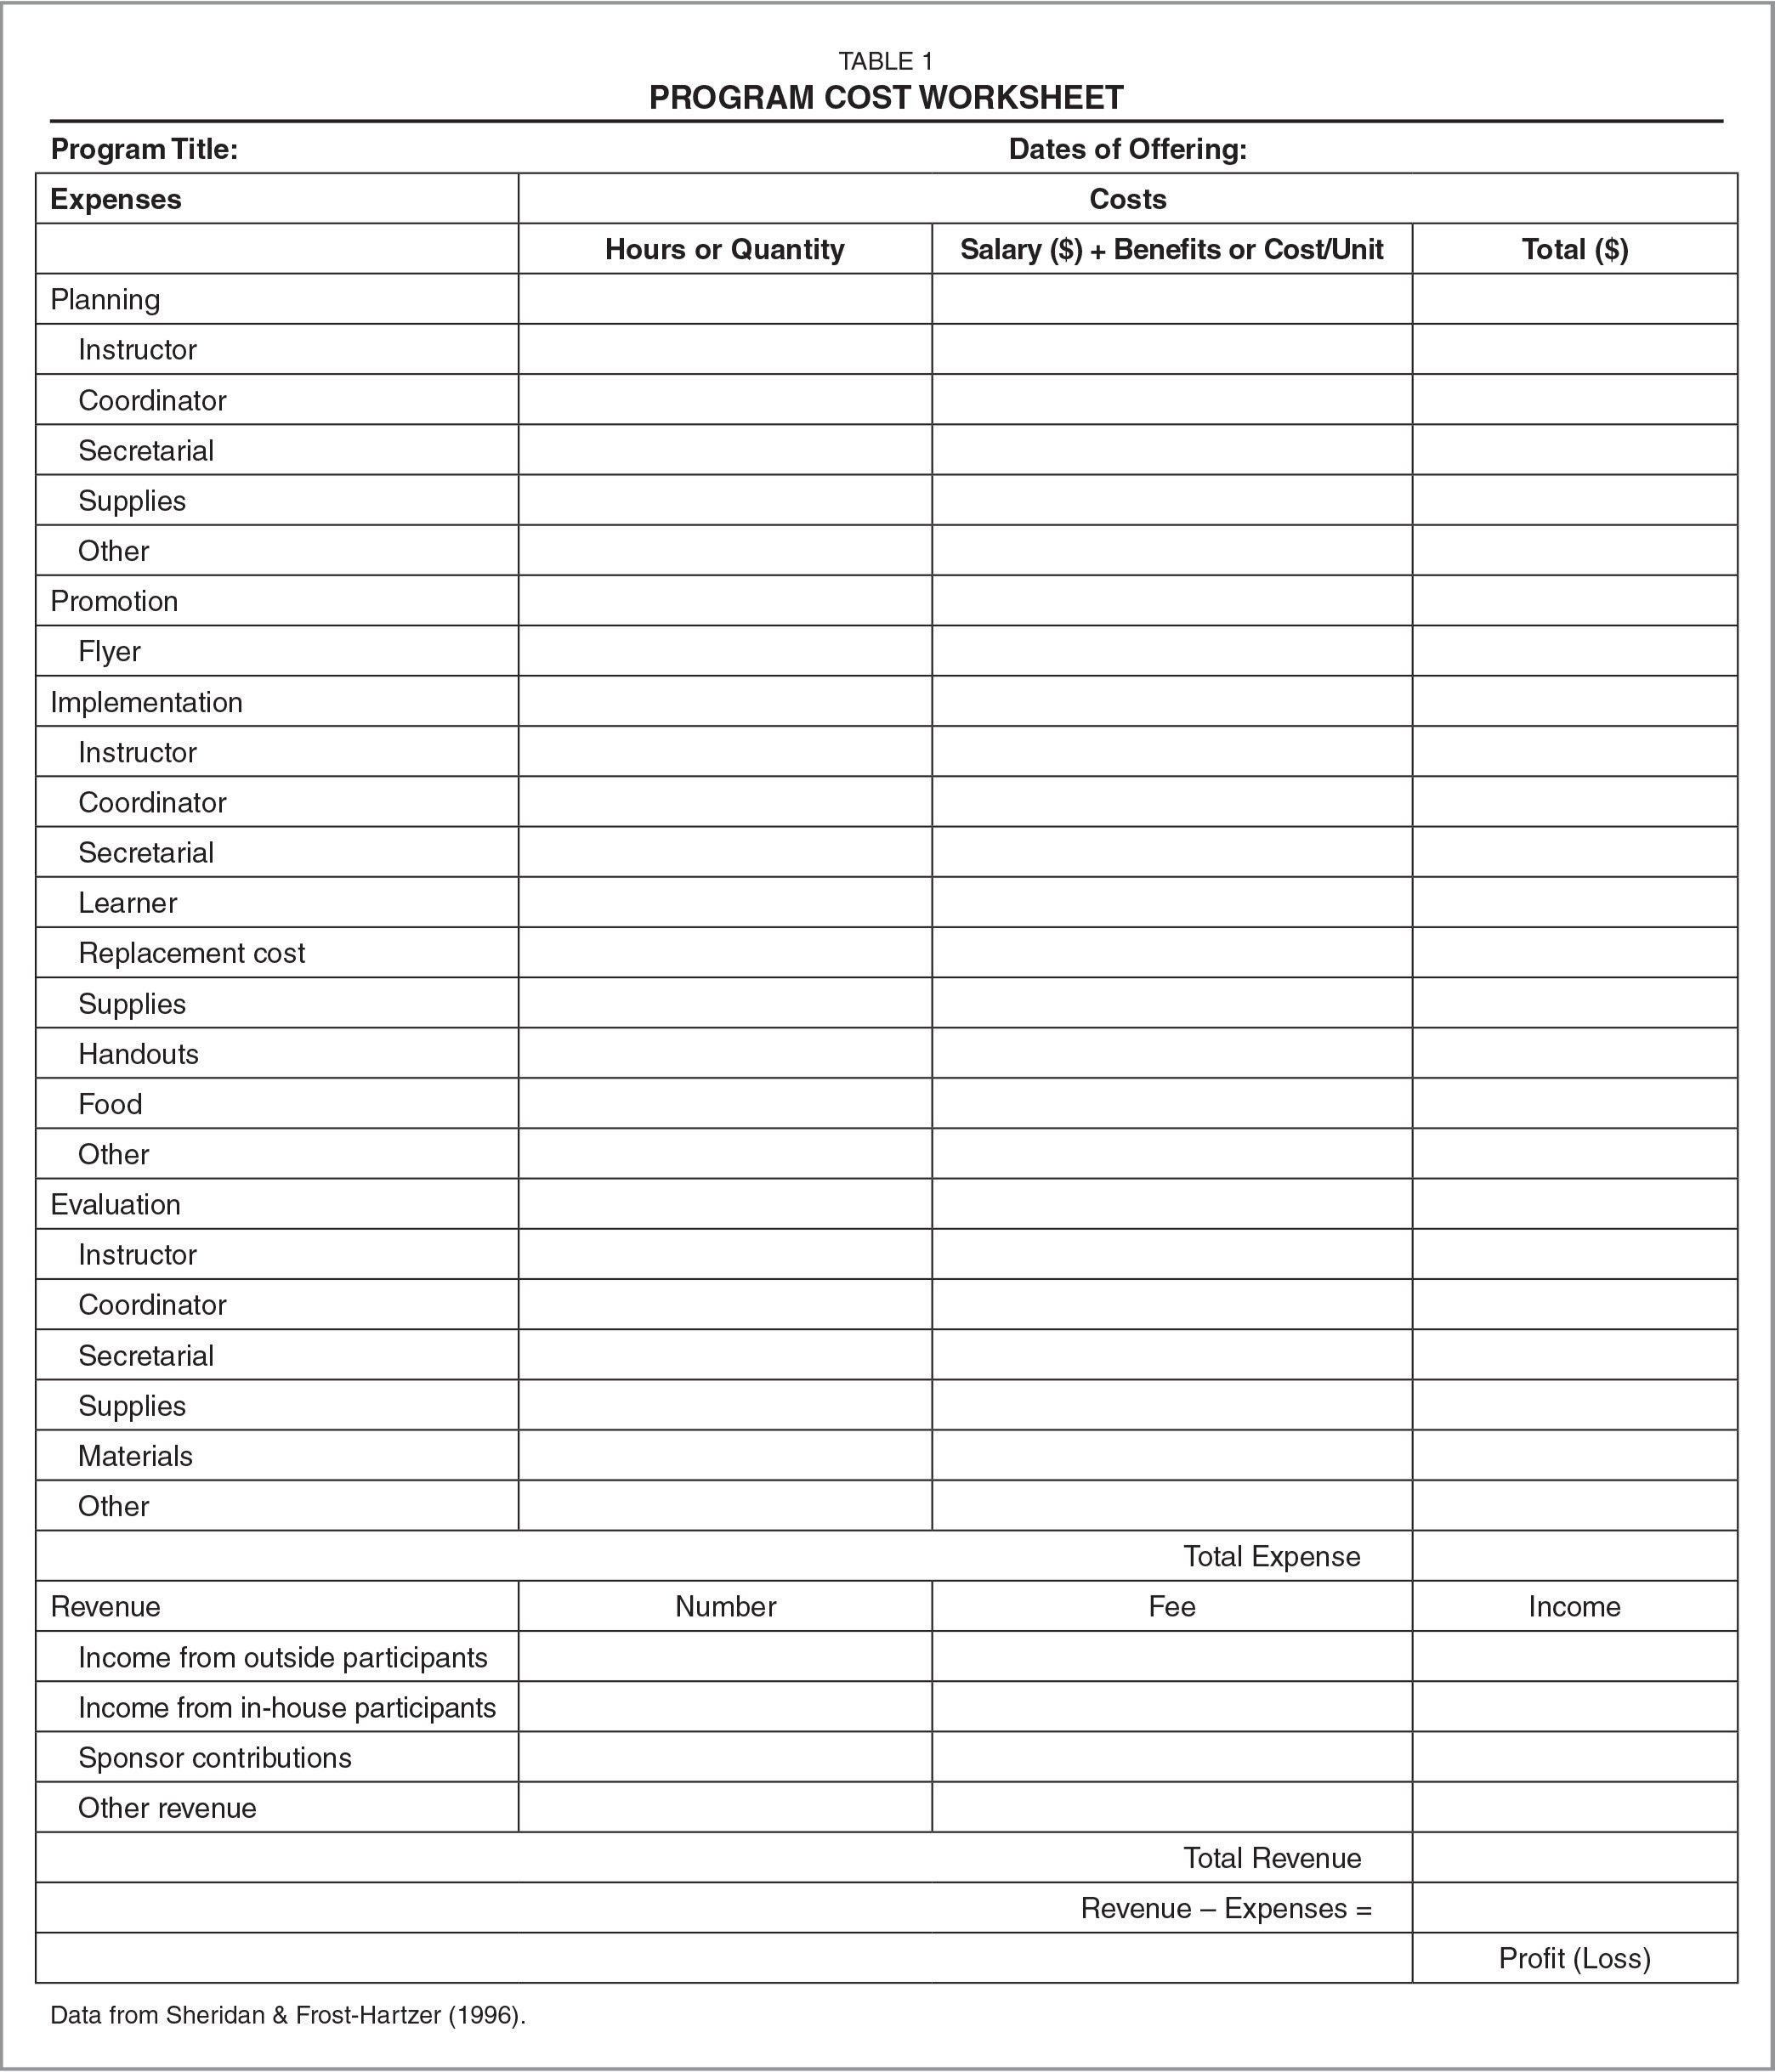 Schedule C Expenses Worksheet  Home Design Ideas  Home Design Ideas For Schedule A Medical Expenses Worksheet